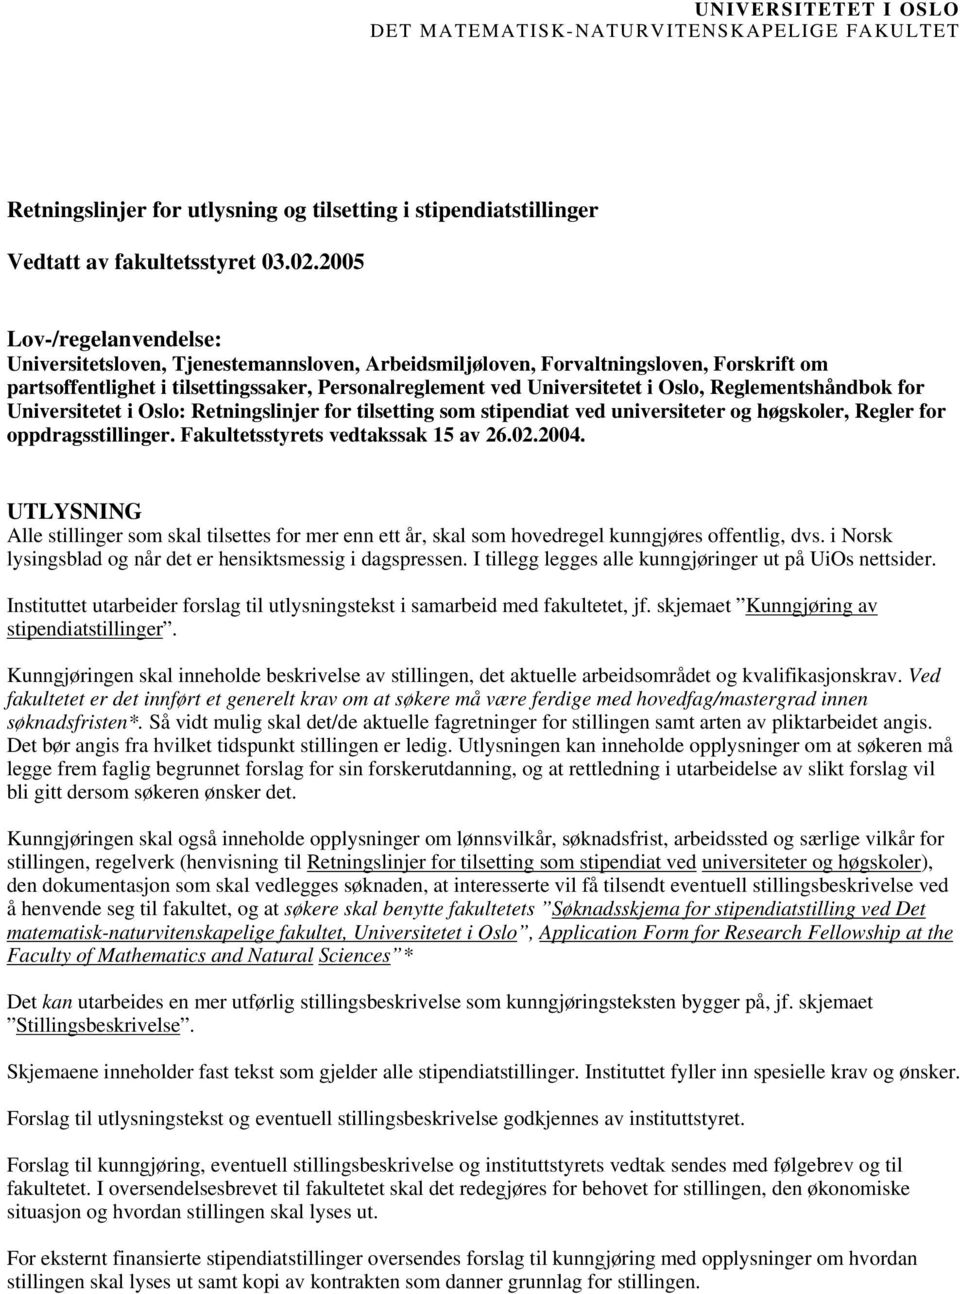 Reglementshåndbok for Universitetet i Oslo: Retningslinjer for tilsetting som stipendiat ved universiteter og høgskoler, Regler for oppdragsstillinger. Fakultetsstyrets vedtakssak 15 av 26.02.2004.